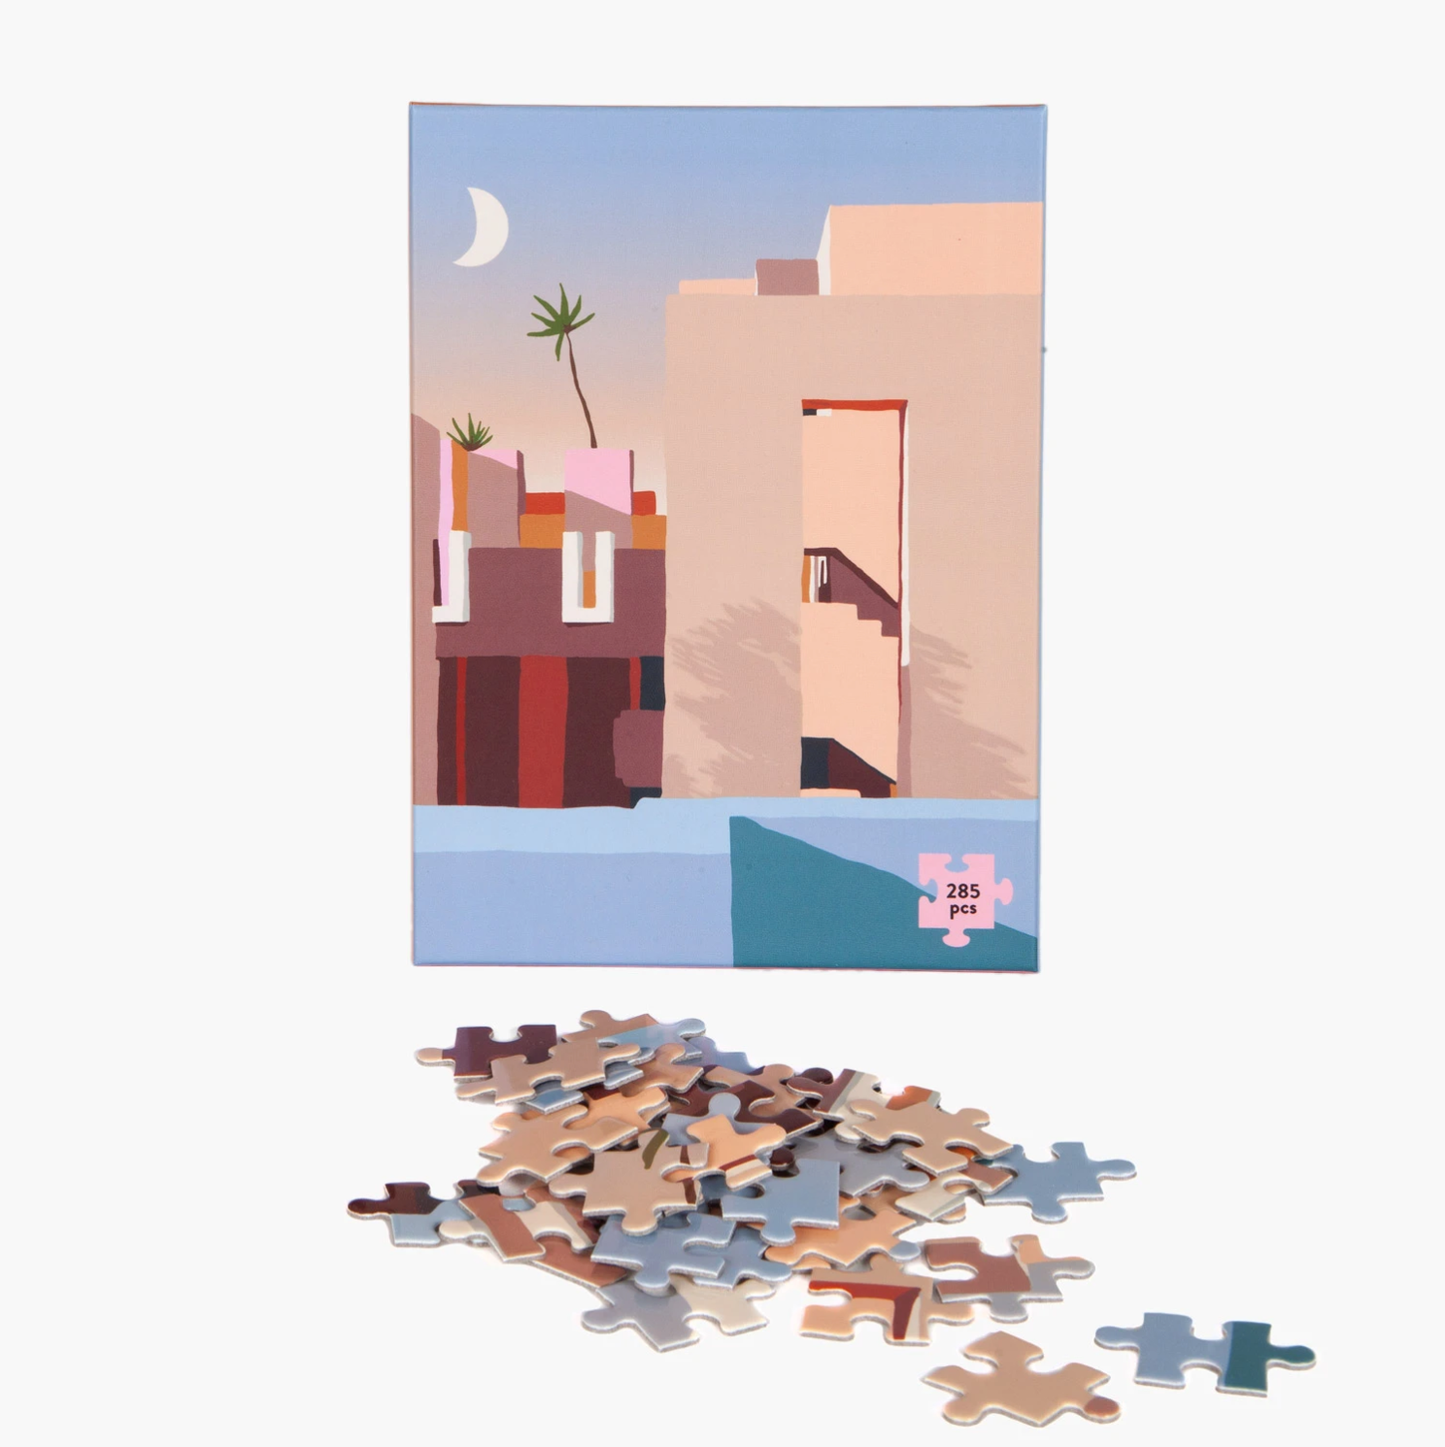 Slowdown Studio: Jigsaw Puzzles